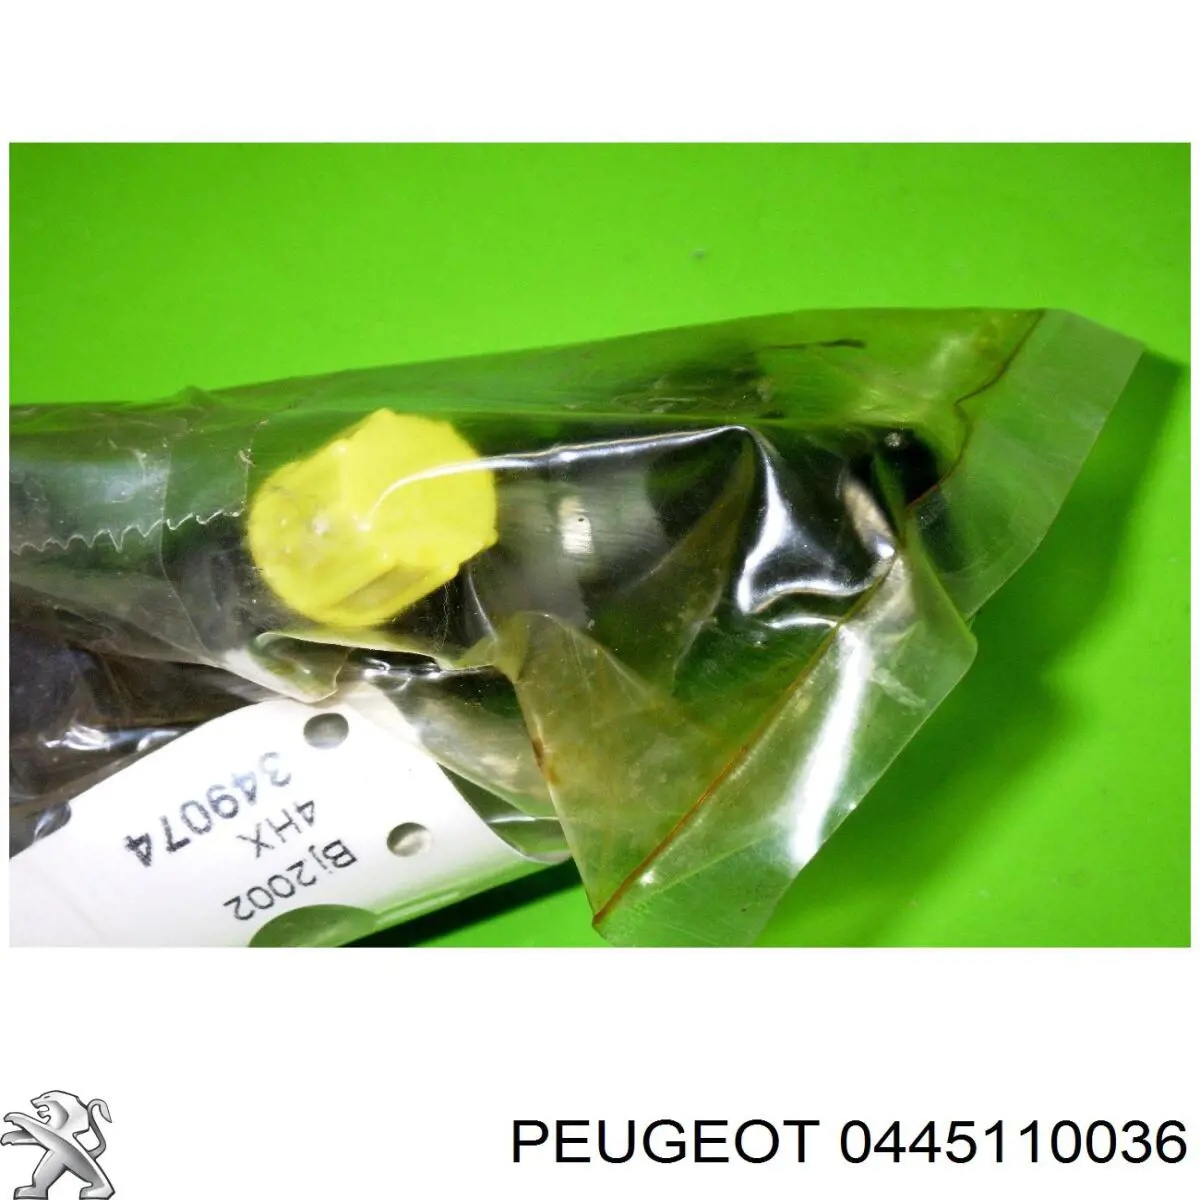 0445110036 Peugeot/Citroen injetor de injeção de combustível